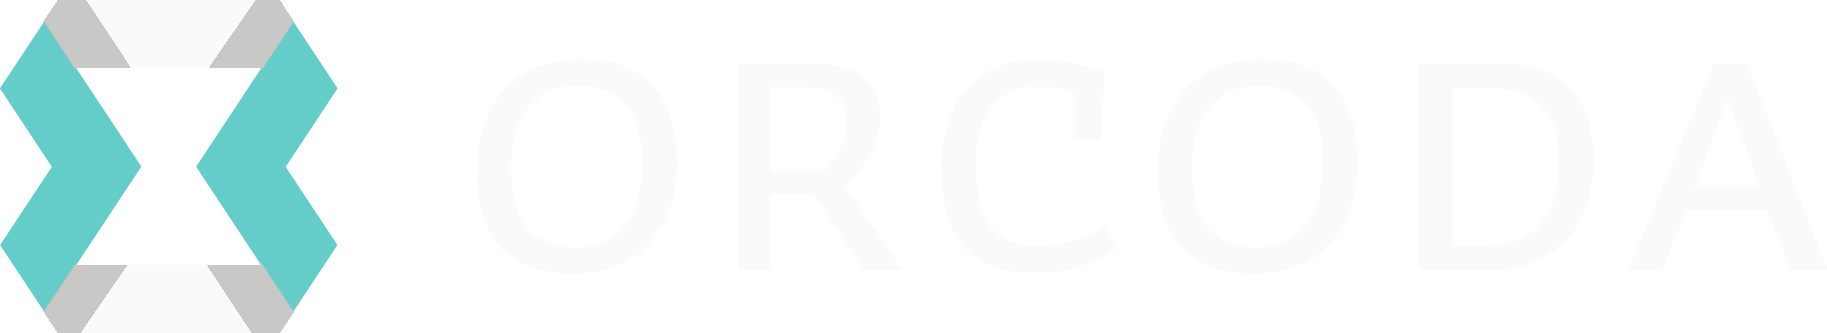 Orcoda Logo